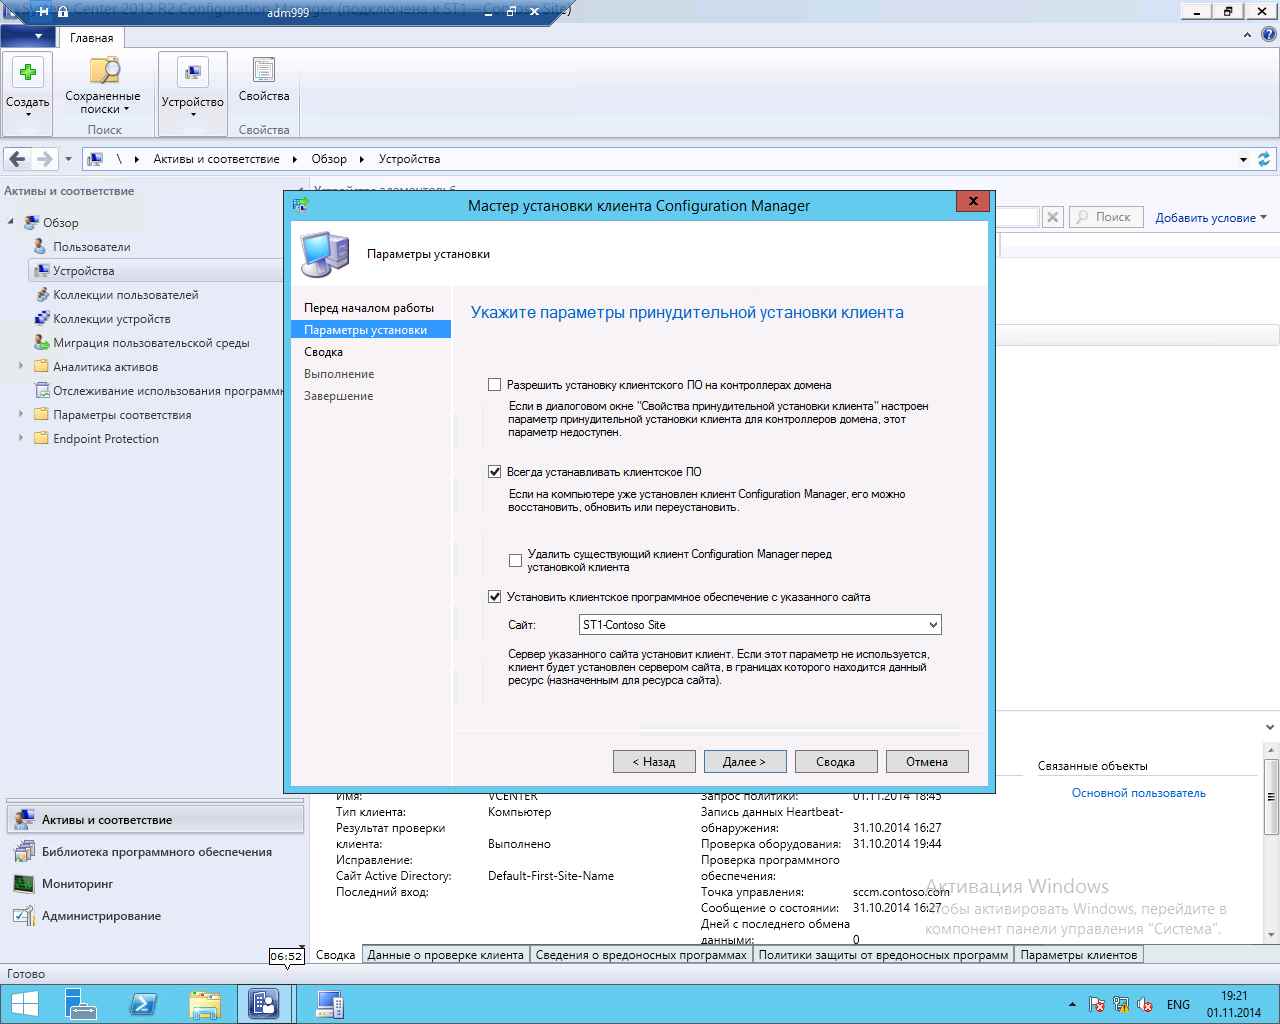 Как установить SCCM (System Center Configuration Manager) 2012R2 в windows server 2012R2 -6 часть. Как принудительно установить клиента-10